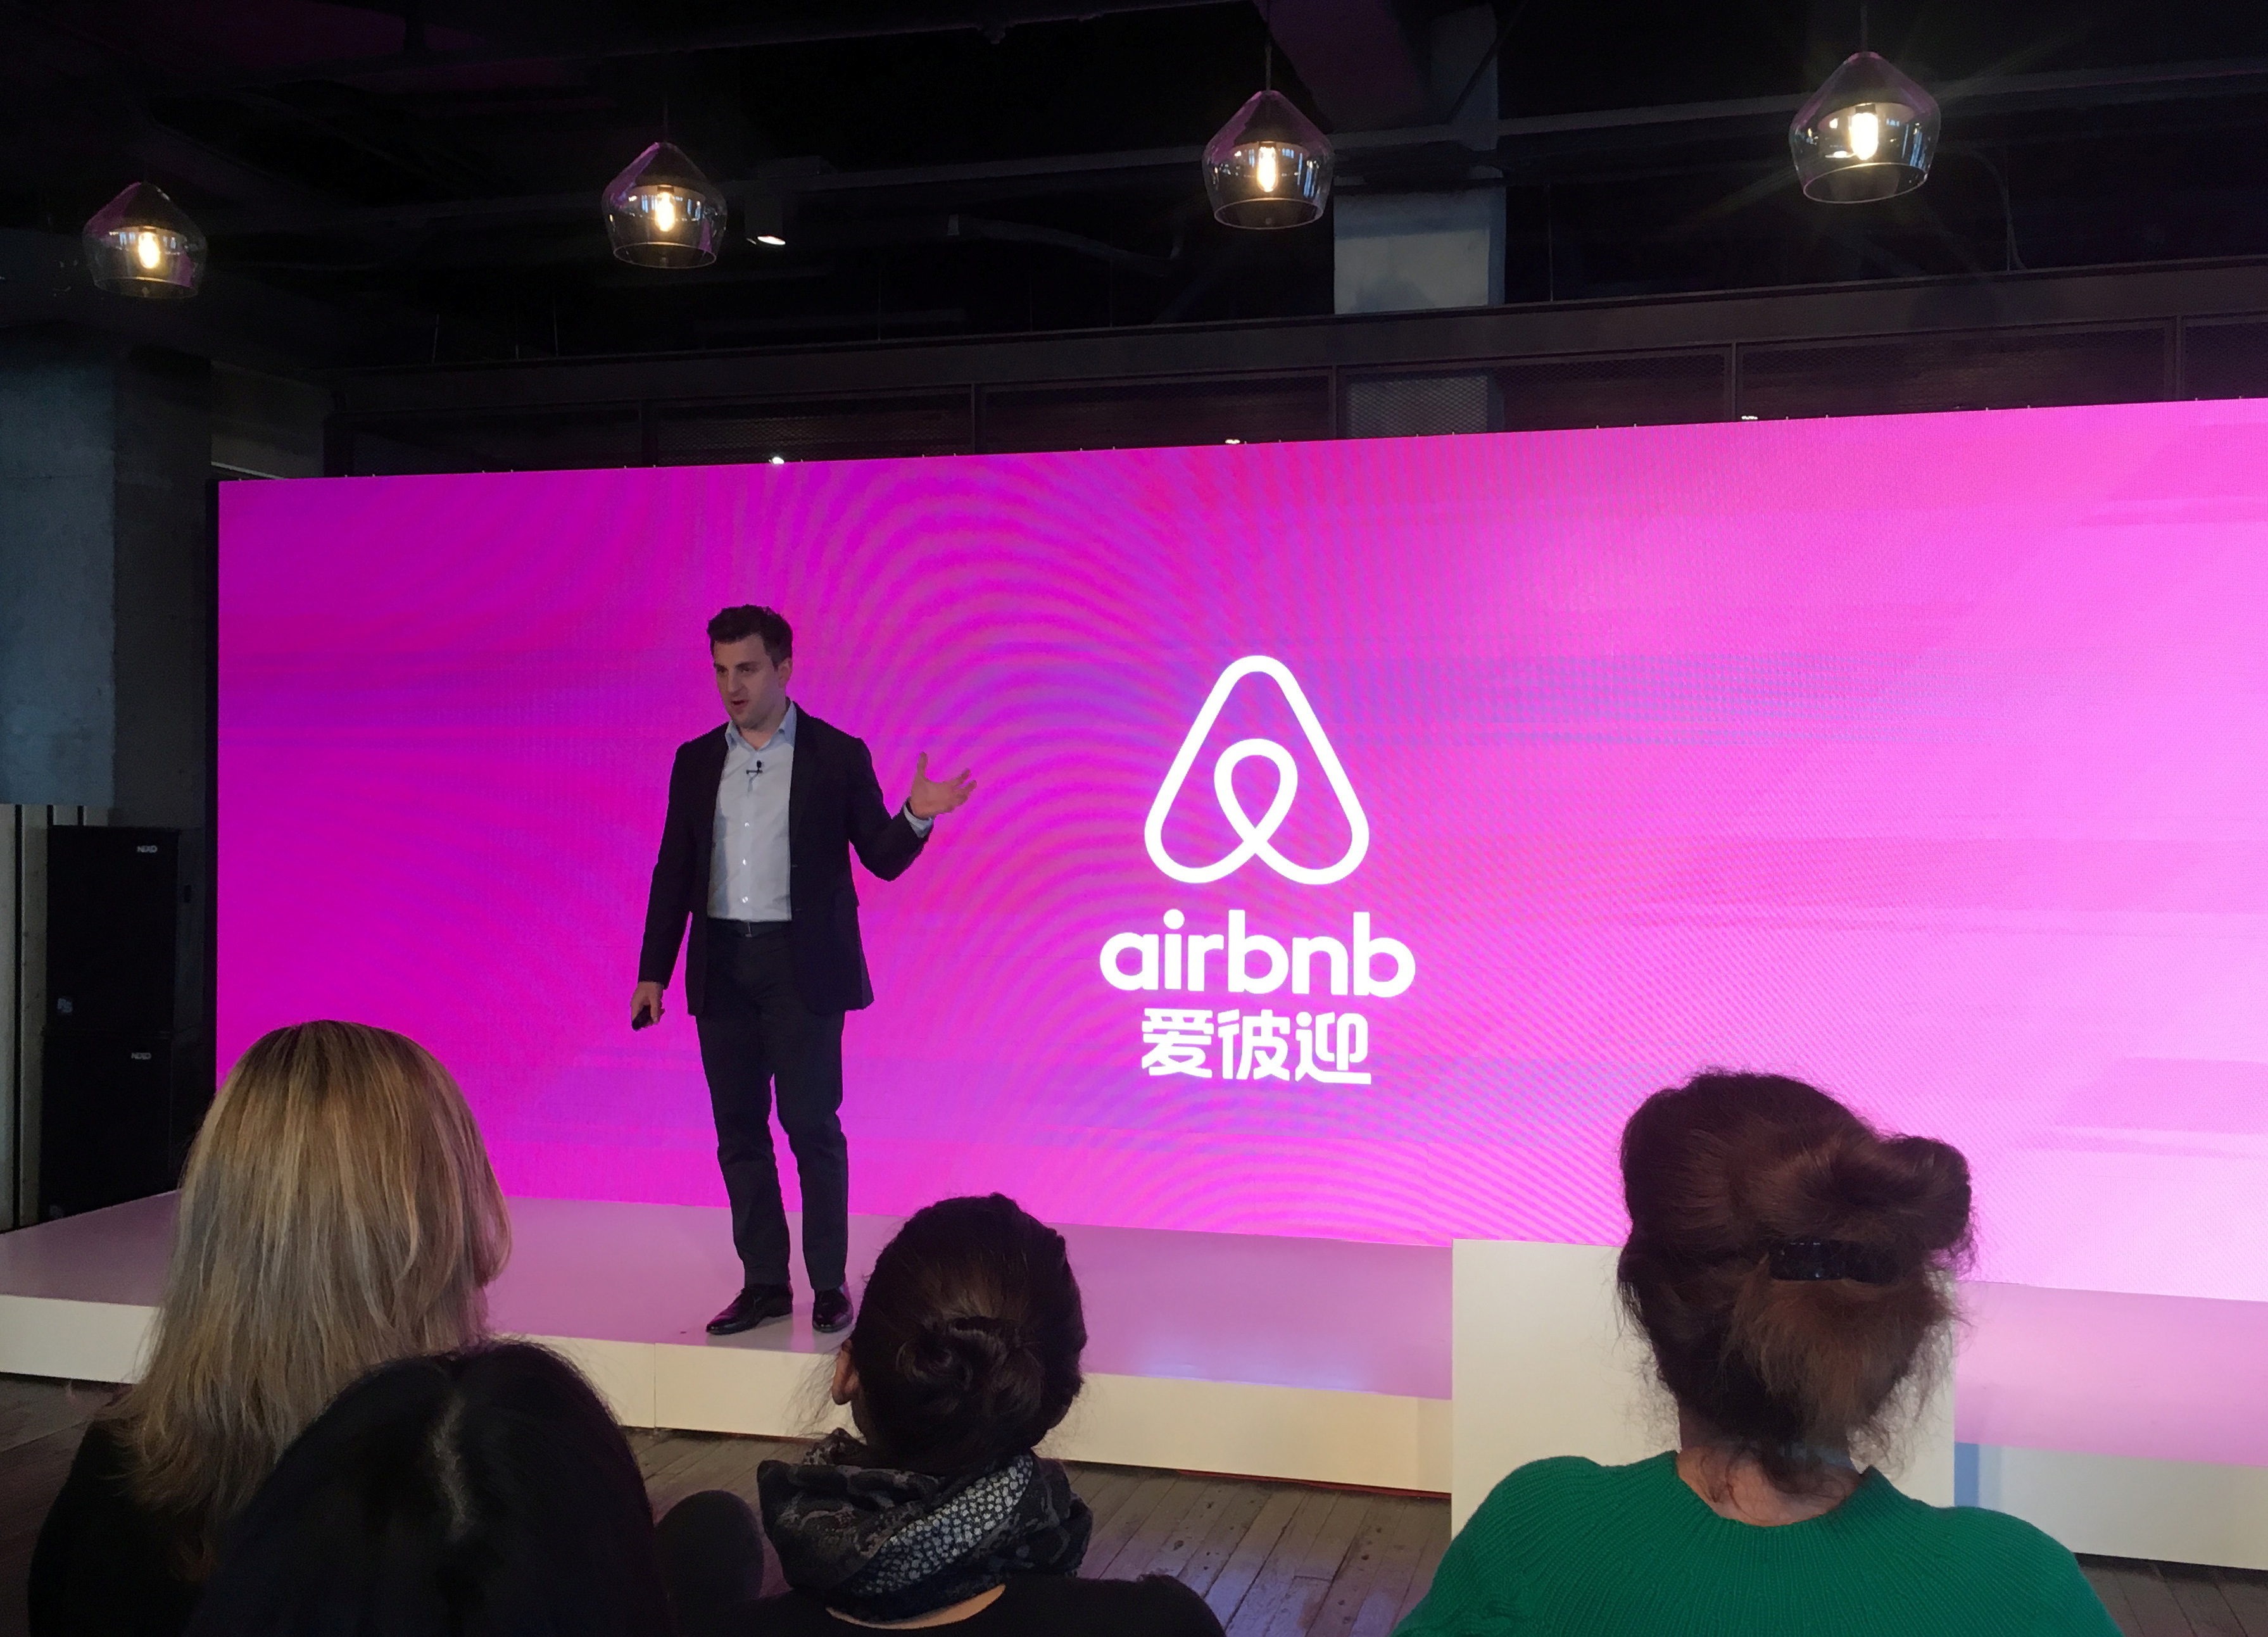 FOTO DE ARCHIVO: El cofundador y director ejecutivo de Airbnb, Brian Chesky, habla en un evento para lanzar el nombre chino de la marca, en Shanghái, China, el 22 de marzo de 2017. REUTERS/Adam Jourdan/Foto de archivo
